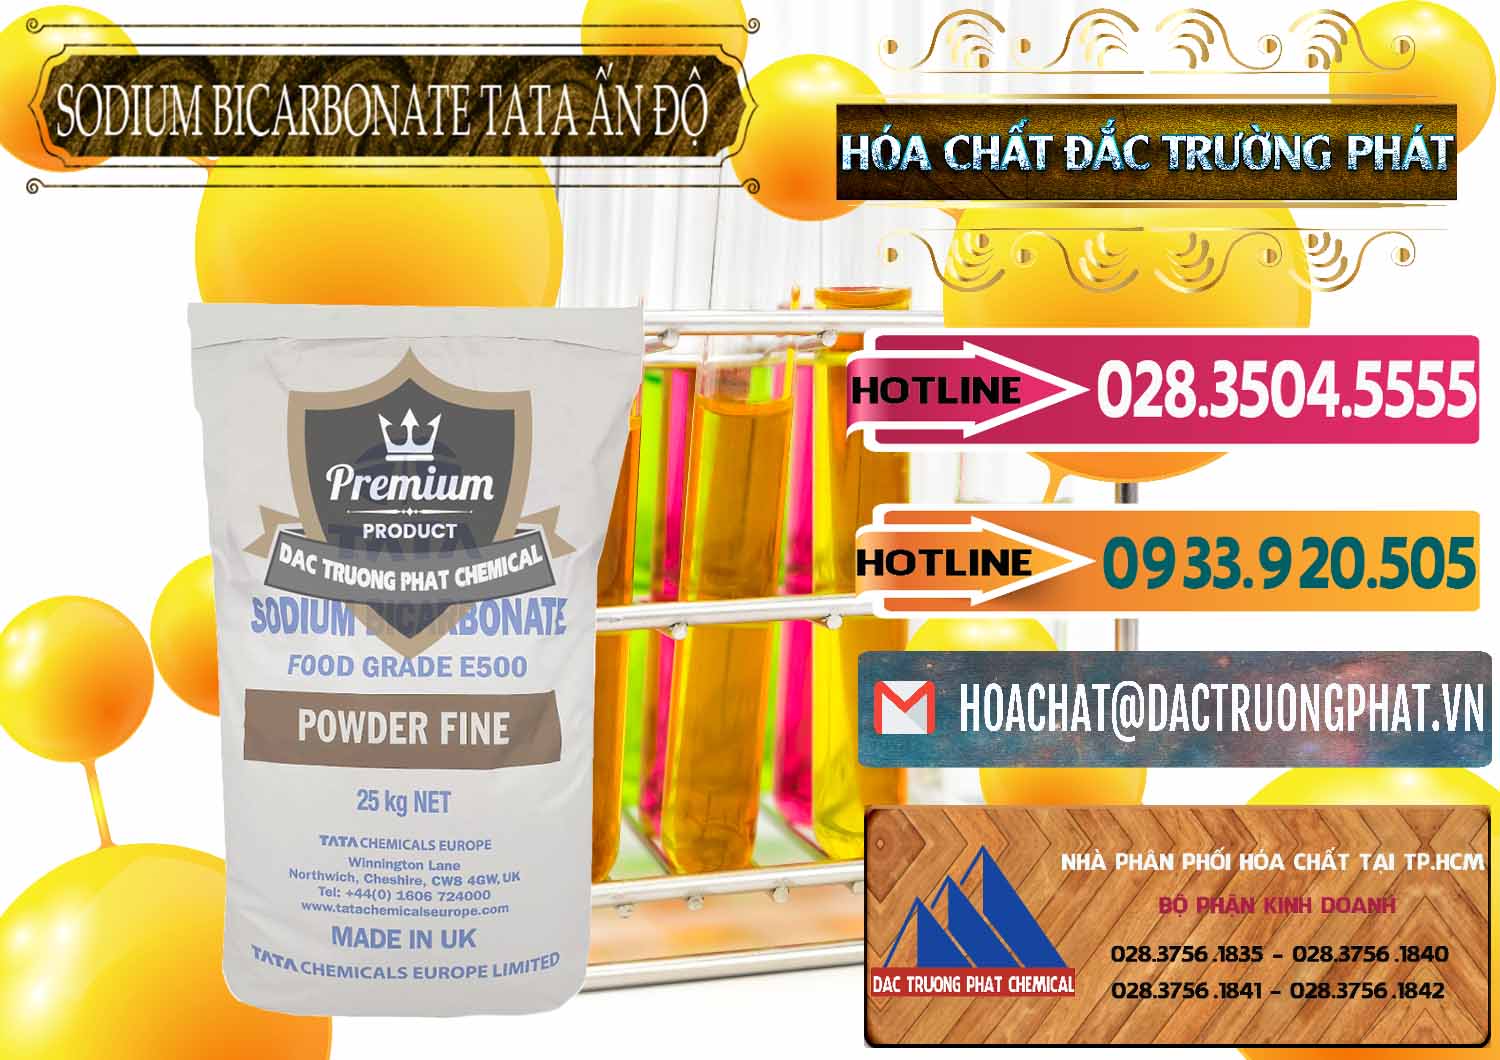 Đơn vị cung cấp & bán Sodium Bicarbonate – Bicar NaHCO3 E500 Thực Phẩm Food Grade Tata Ấn Độ India - 0261 - Nhà cung cấp - phân phối hóa chất tại TP.HCM - dactruongphat.vn